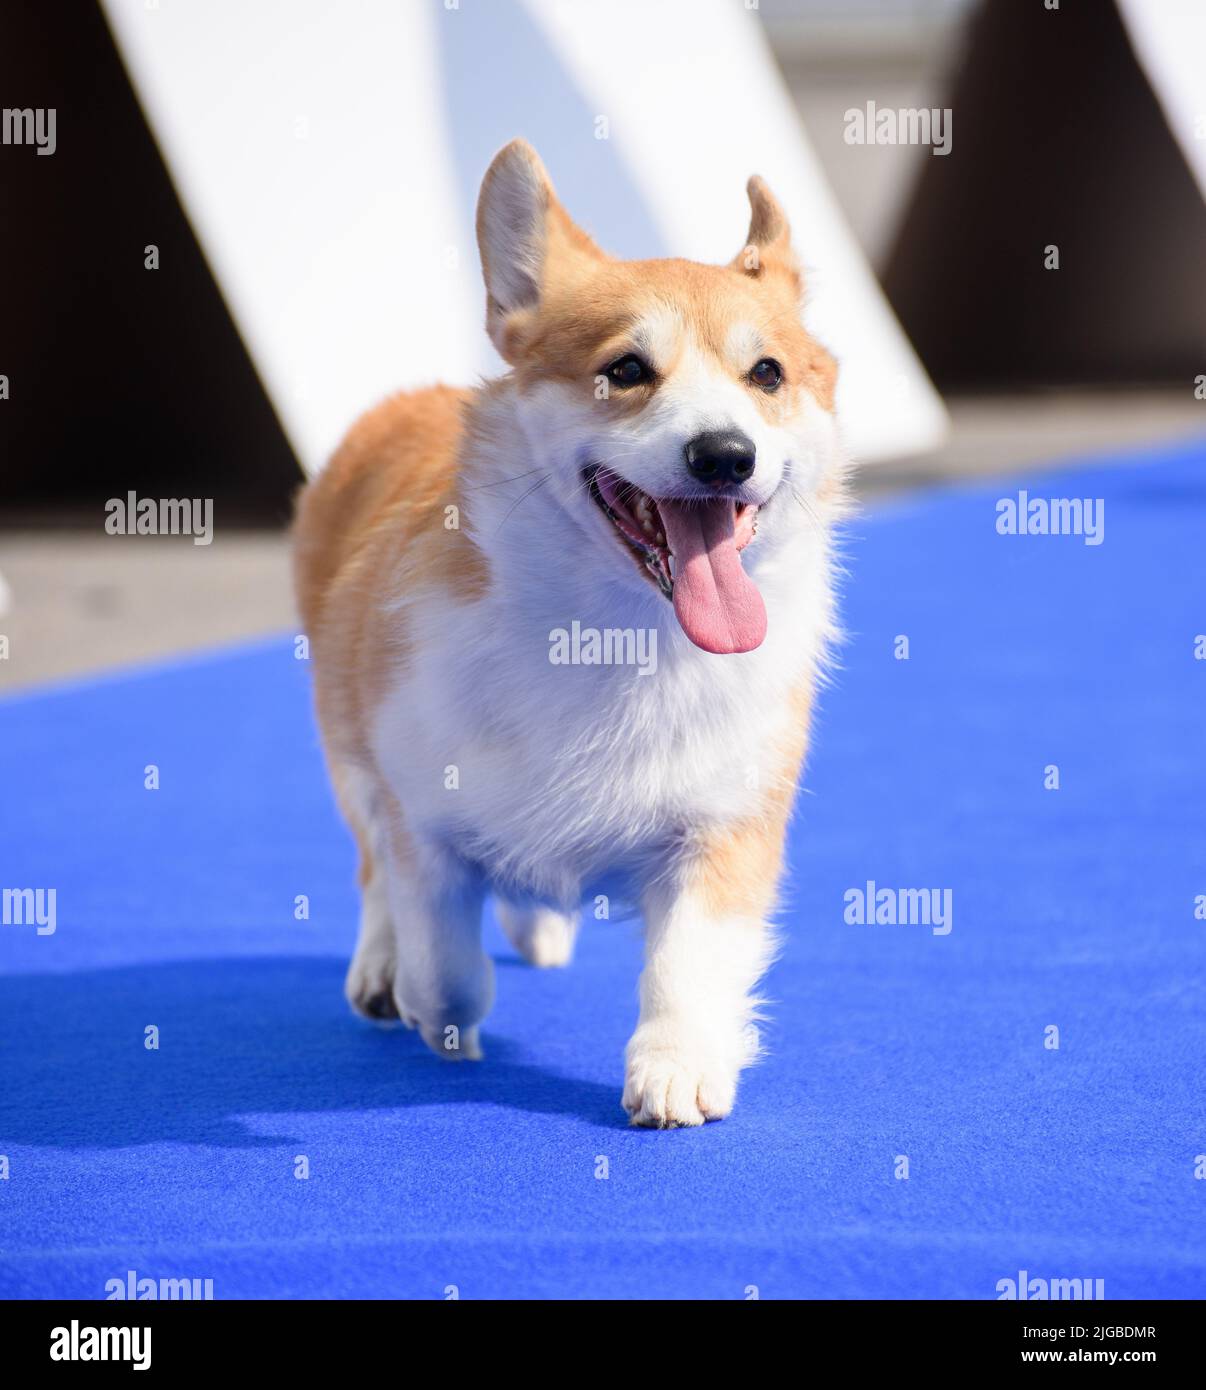 Un alegre perro corgi corre a lo largo de la alfombra azul con su lengua que sobresale. Primer plano. Foto de stock